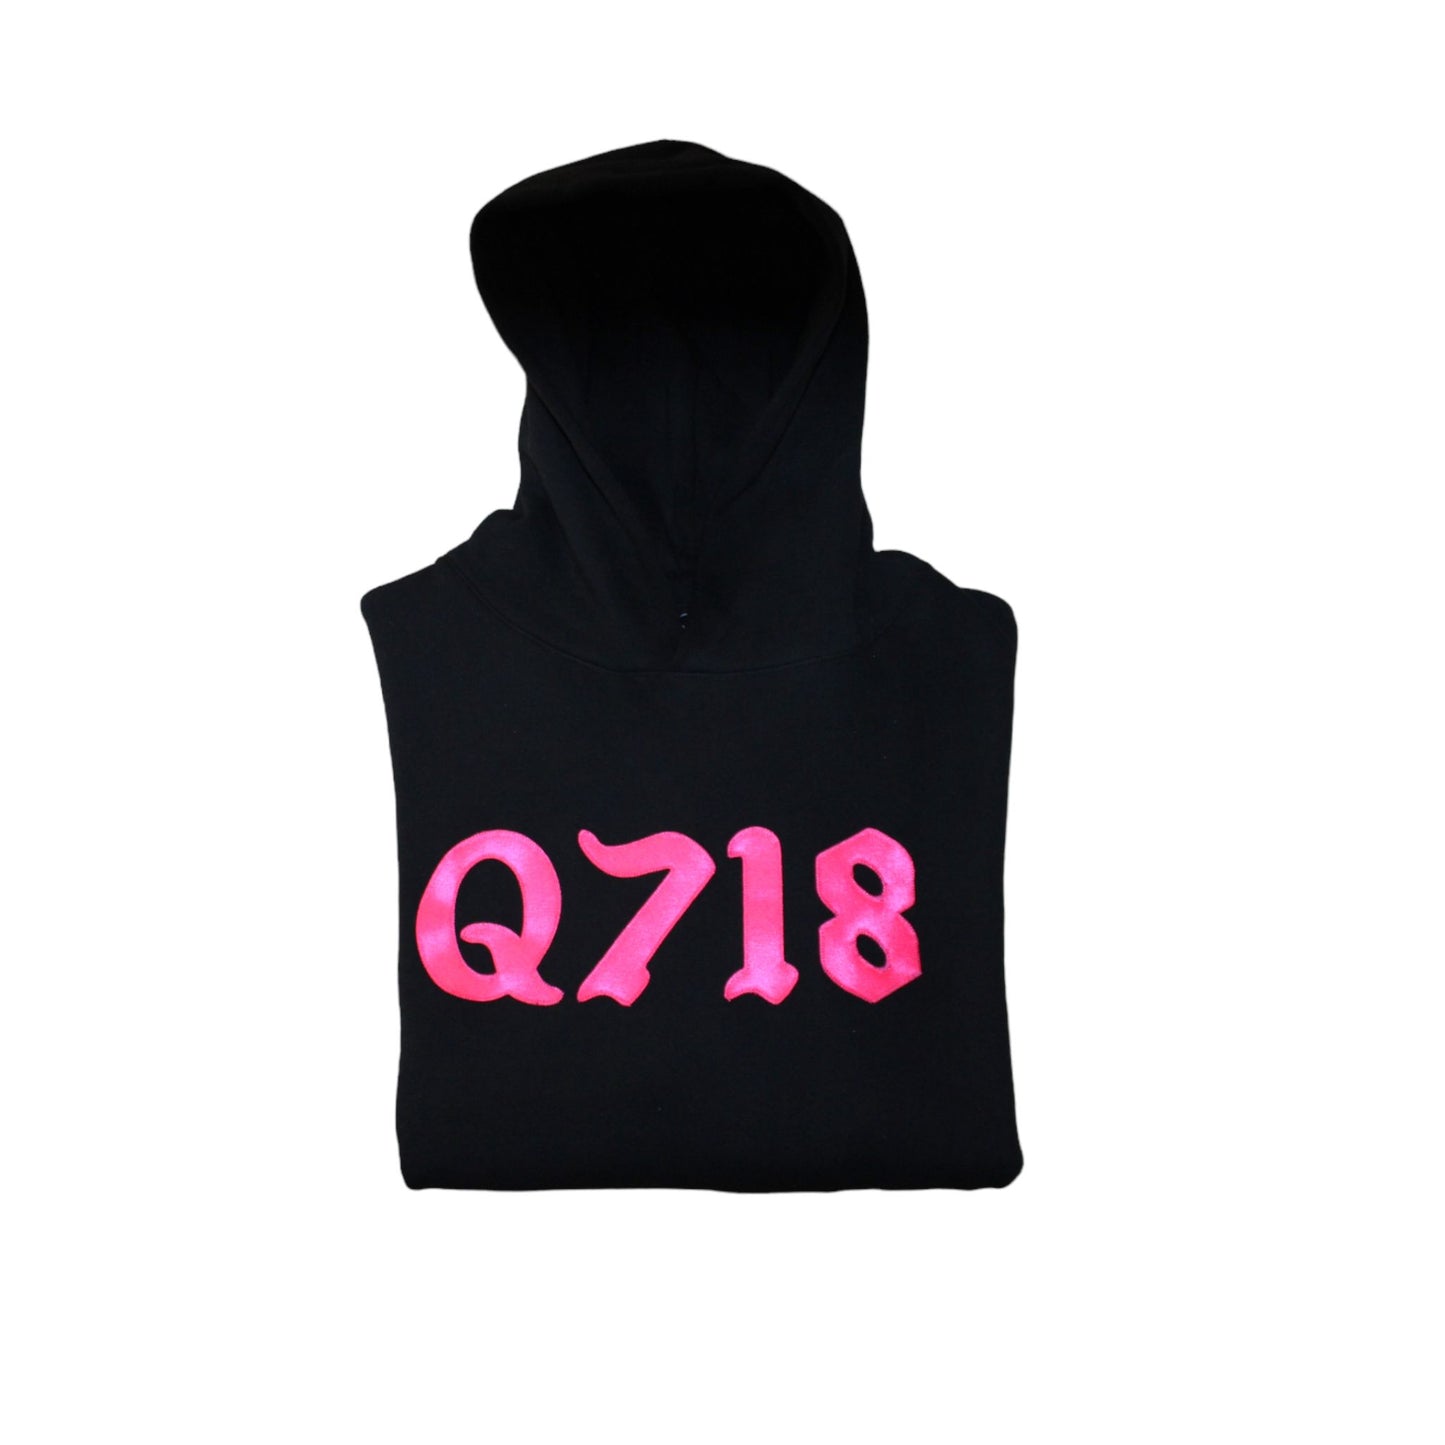 Q718 Hoodie